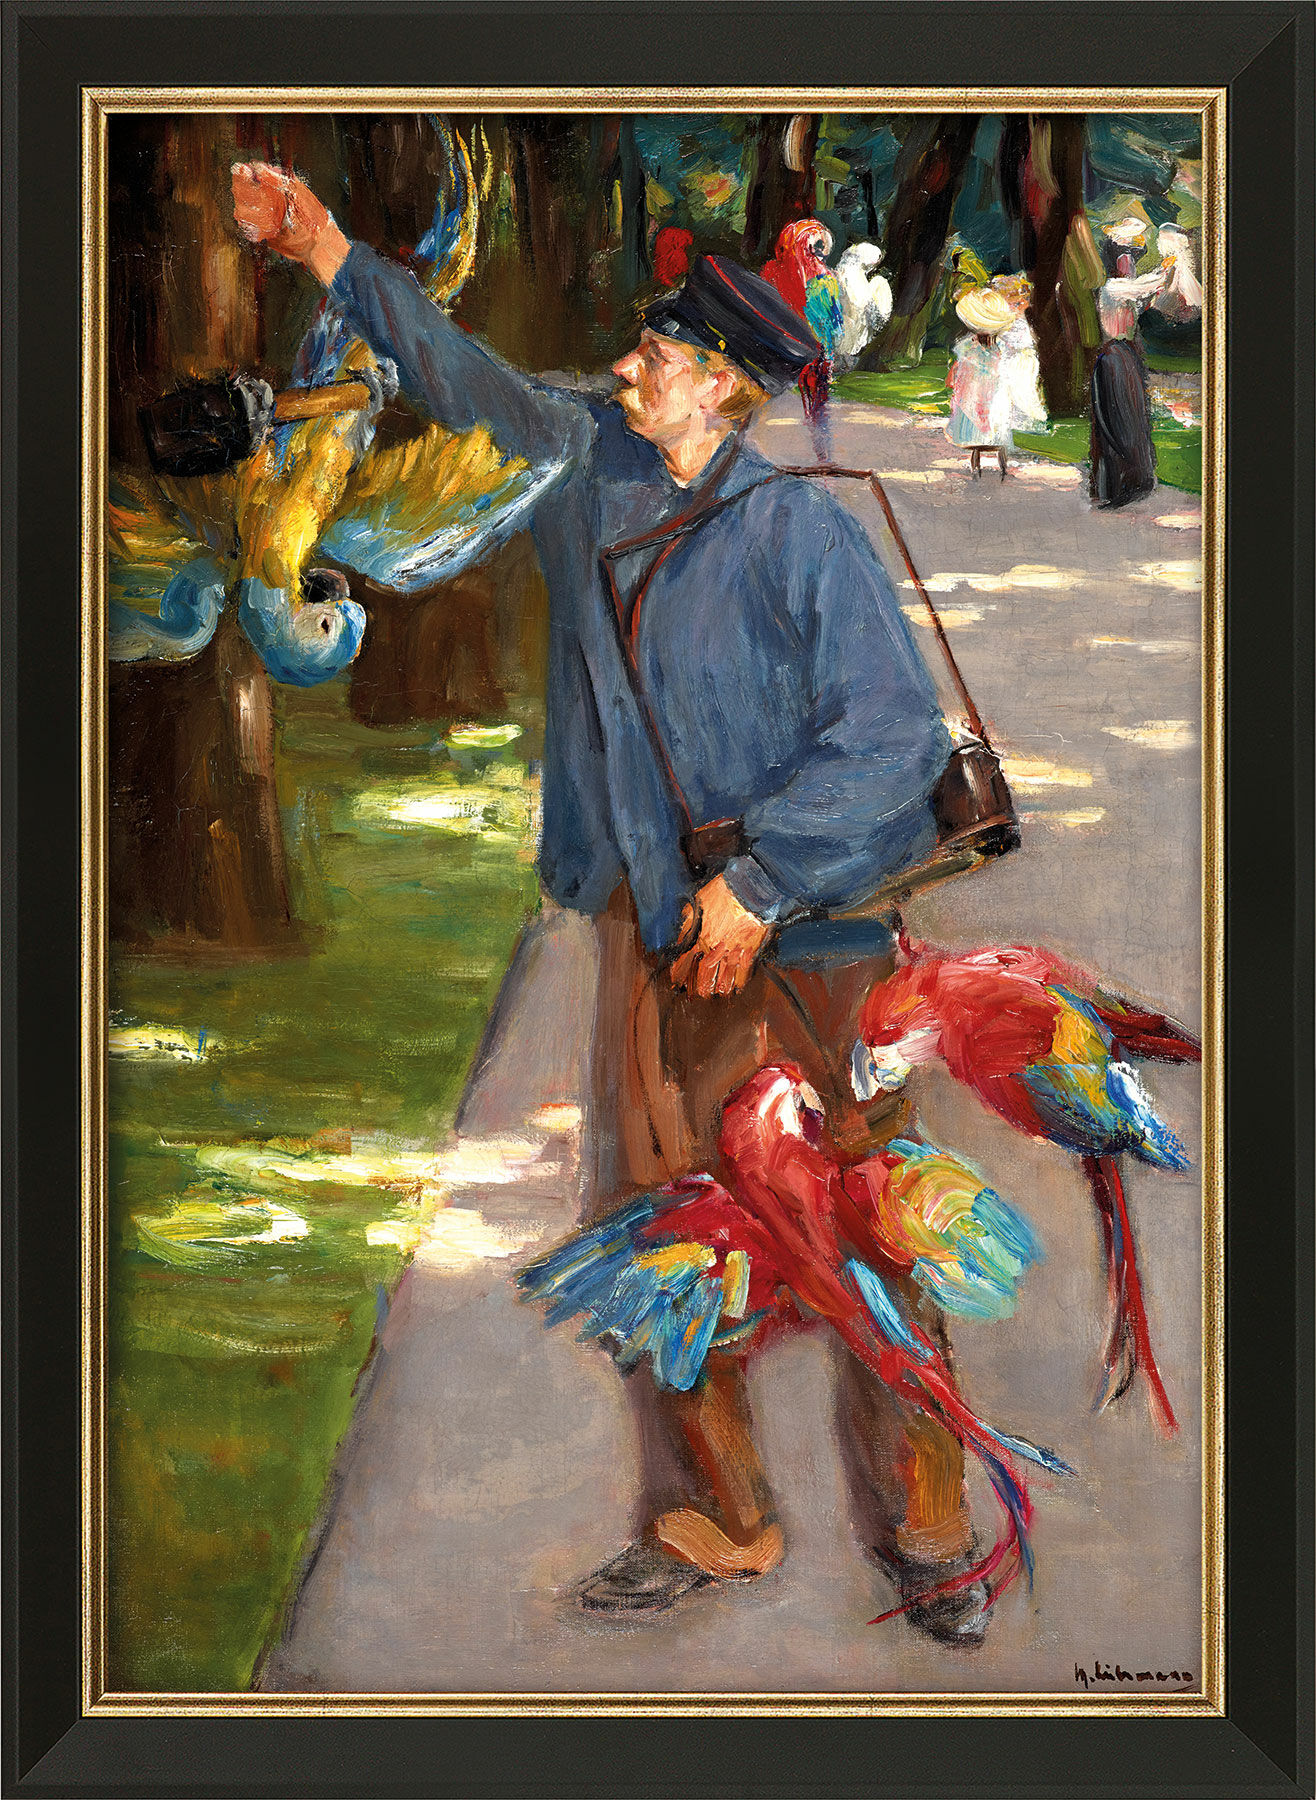 Bild "Der Papageienmann" (1902), gerahmt von Max Liebermann